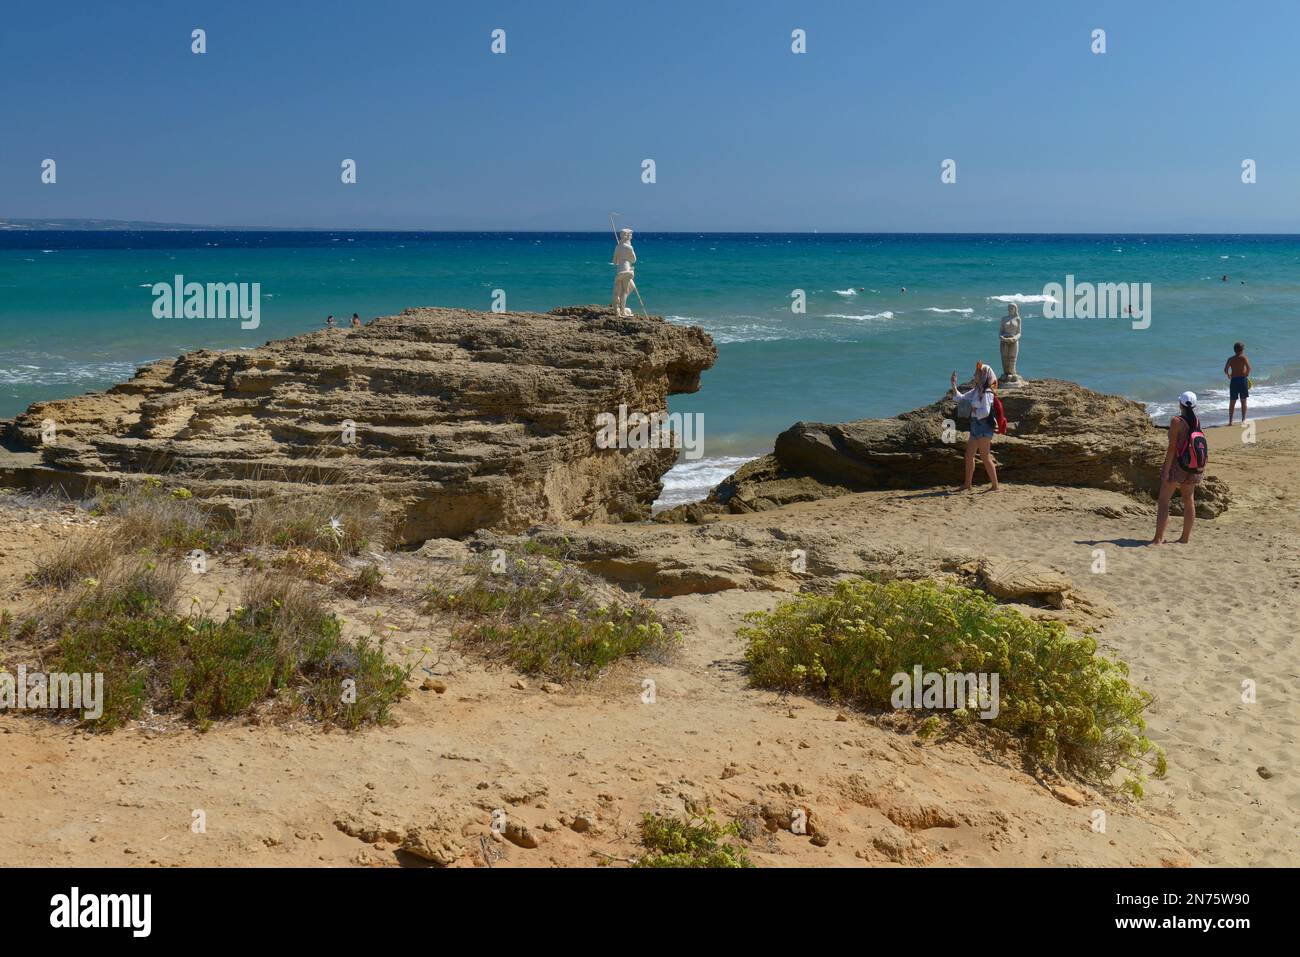 Vue sur la plage de Little Banana, l'île de Zakynthos, les îles Ioniennes, la mer Méditerranée, la Grèce Banque D'Images